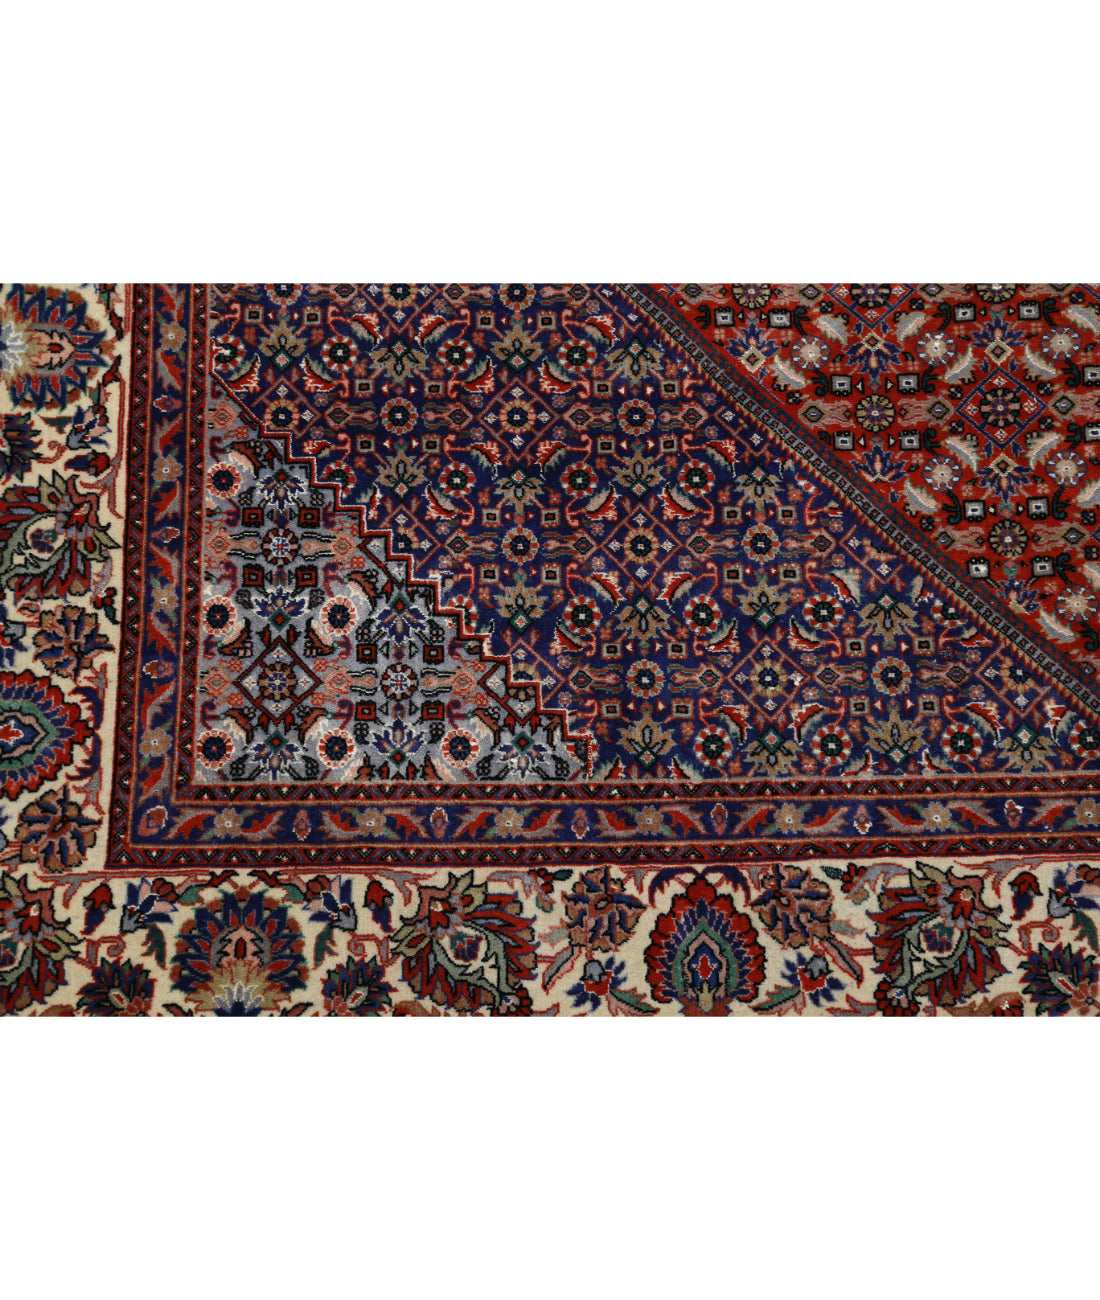 Hand Knotted Persian Bijar Wool & Silk Rug - 6'7'' x 9'8'' 6'7'' x 9'8'' (198 X 290) / Red / Ivory